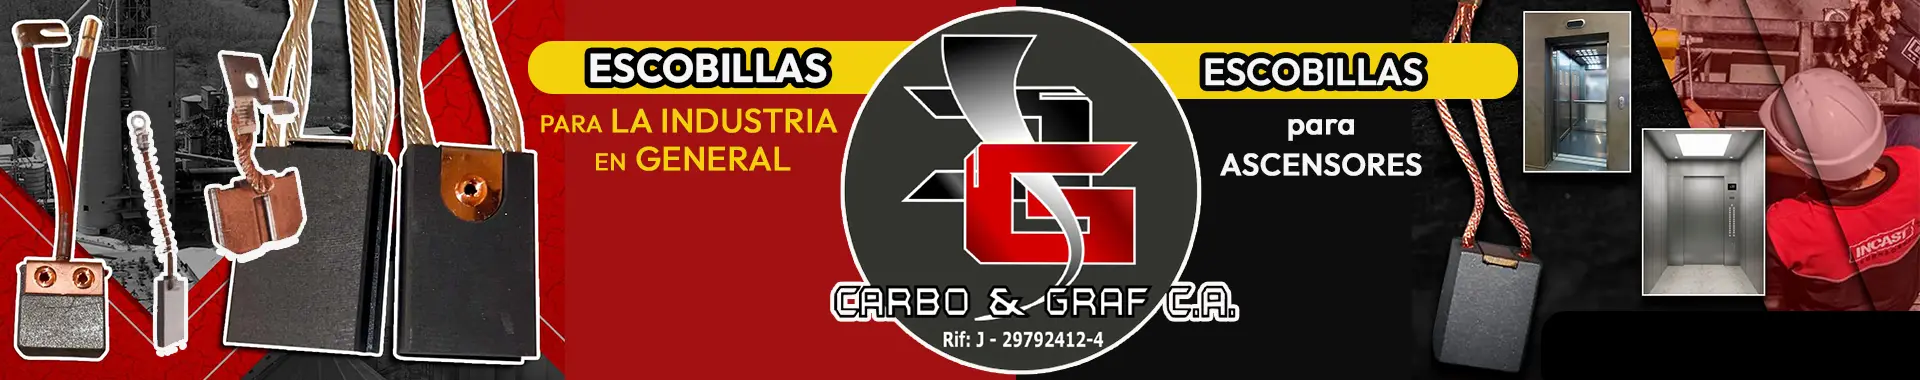 Imagen 2 del perfil de Carbo & Graf CA